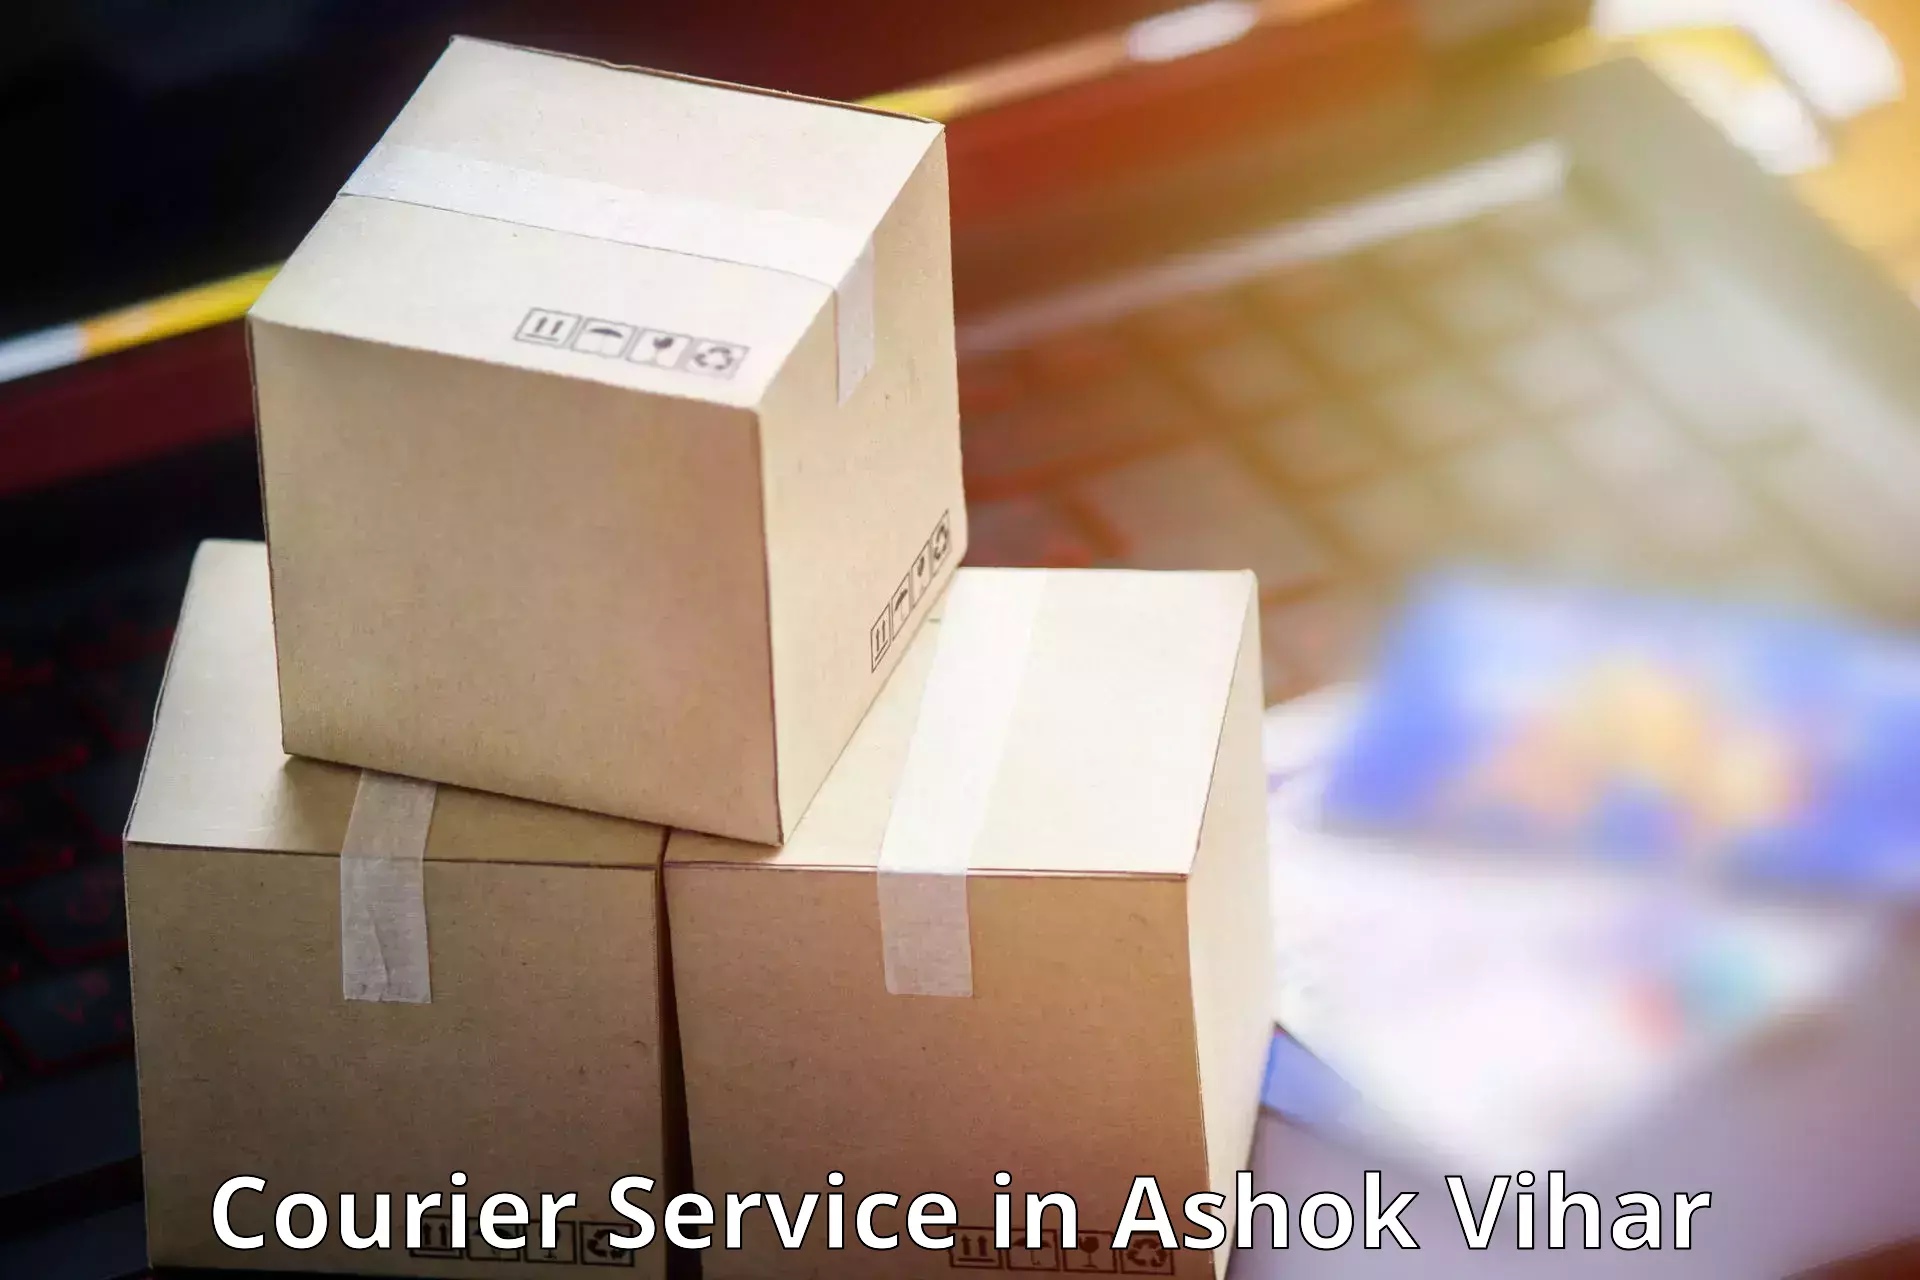 Seamless shipping experience in Ashok Vihar